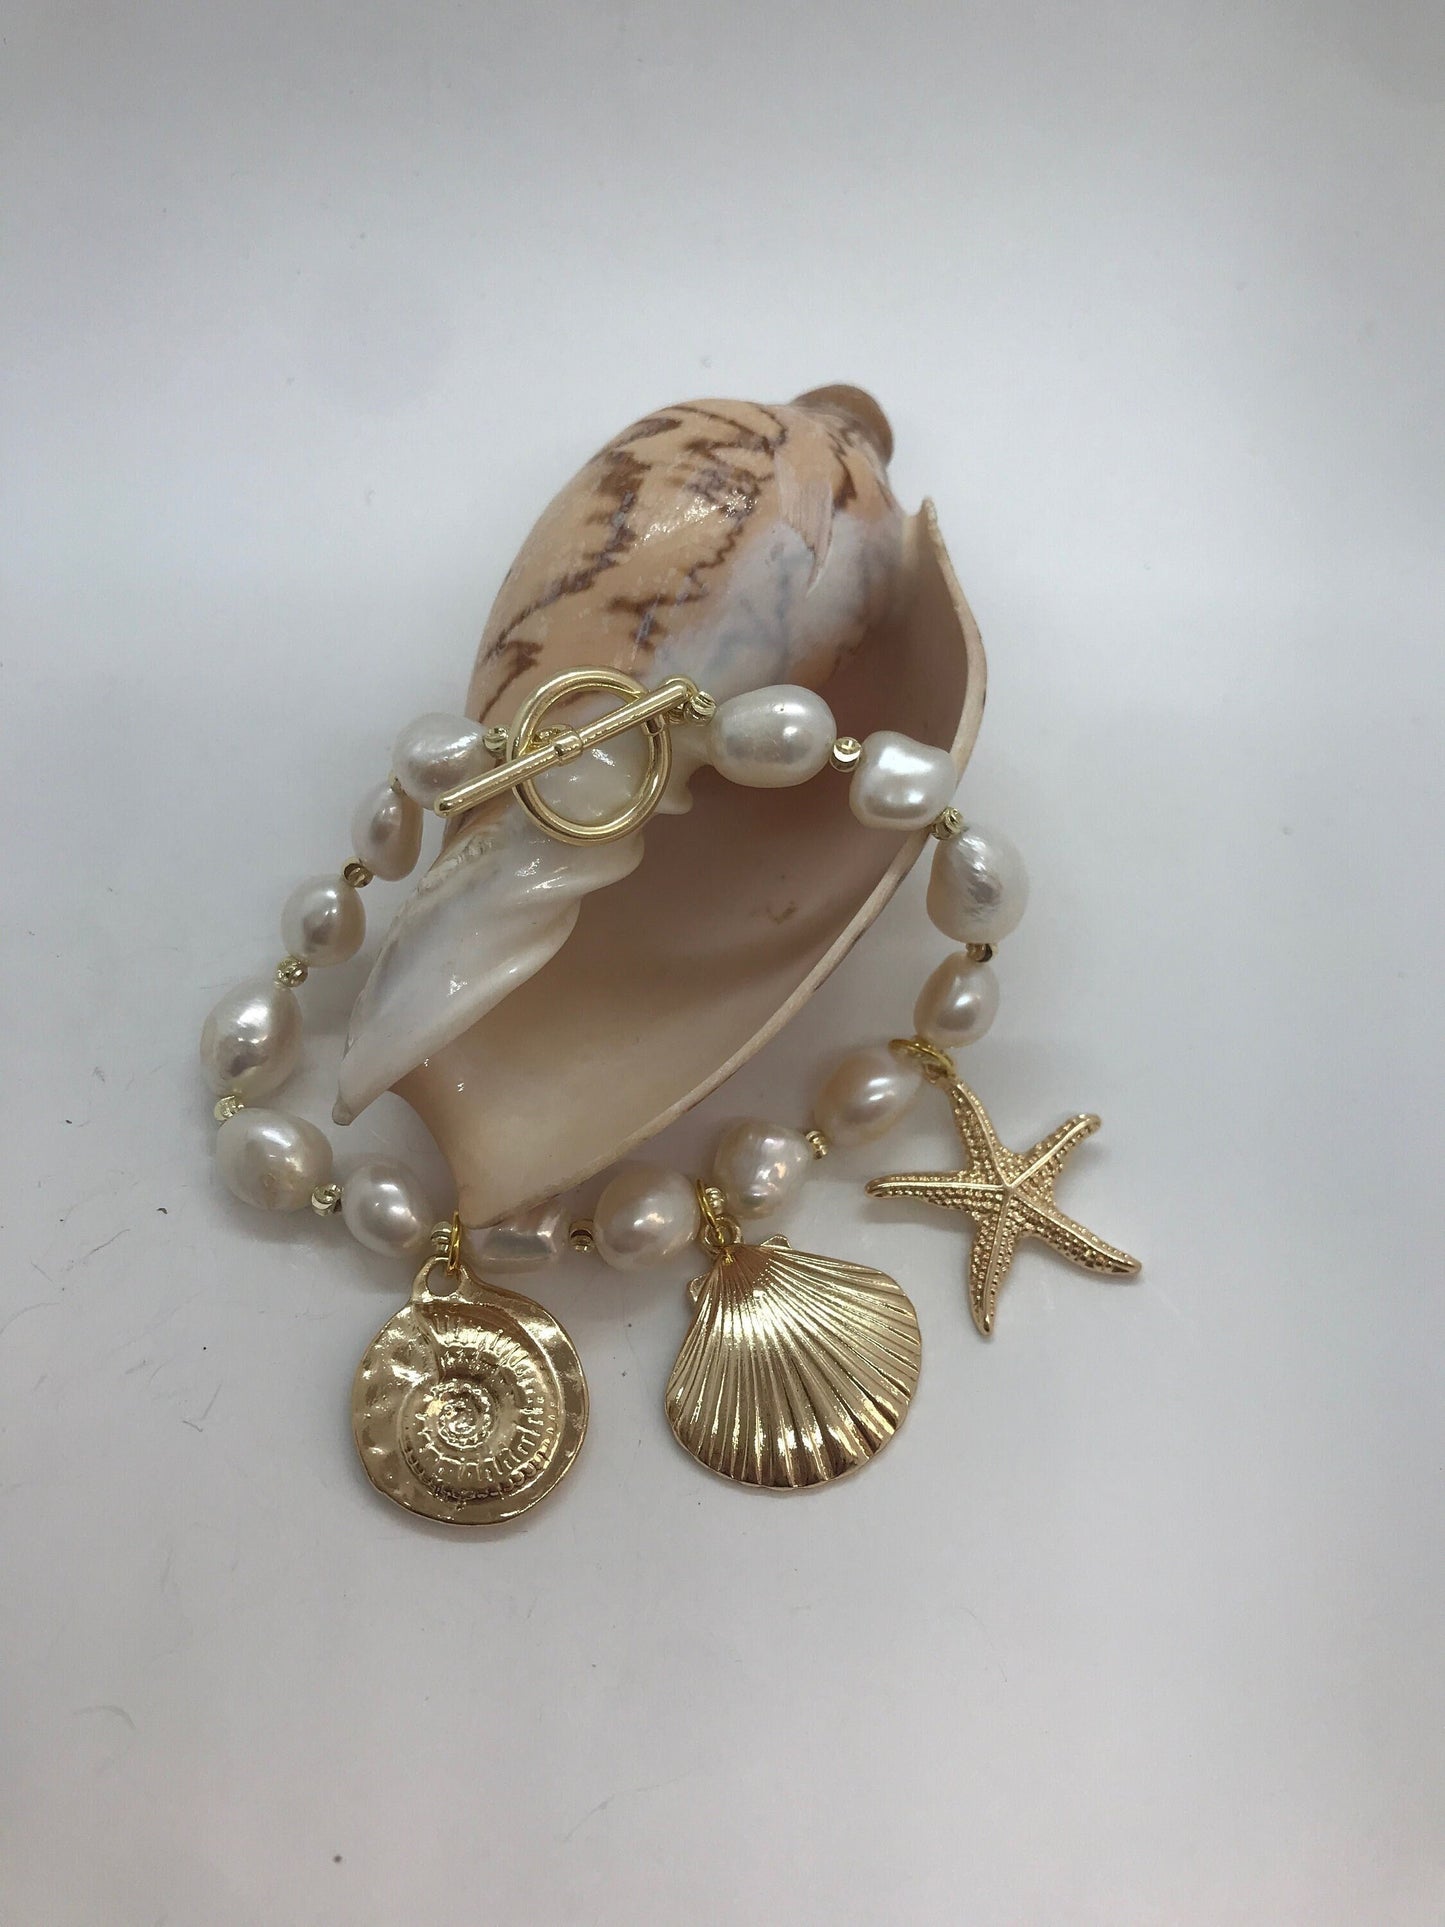 Bracciale perle barocche e piccole perle dorate, bracciale con charms assortiti.)